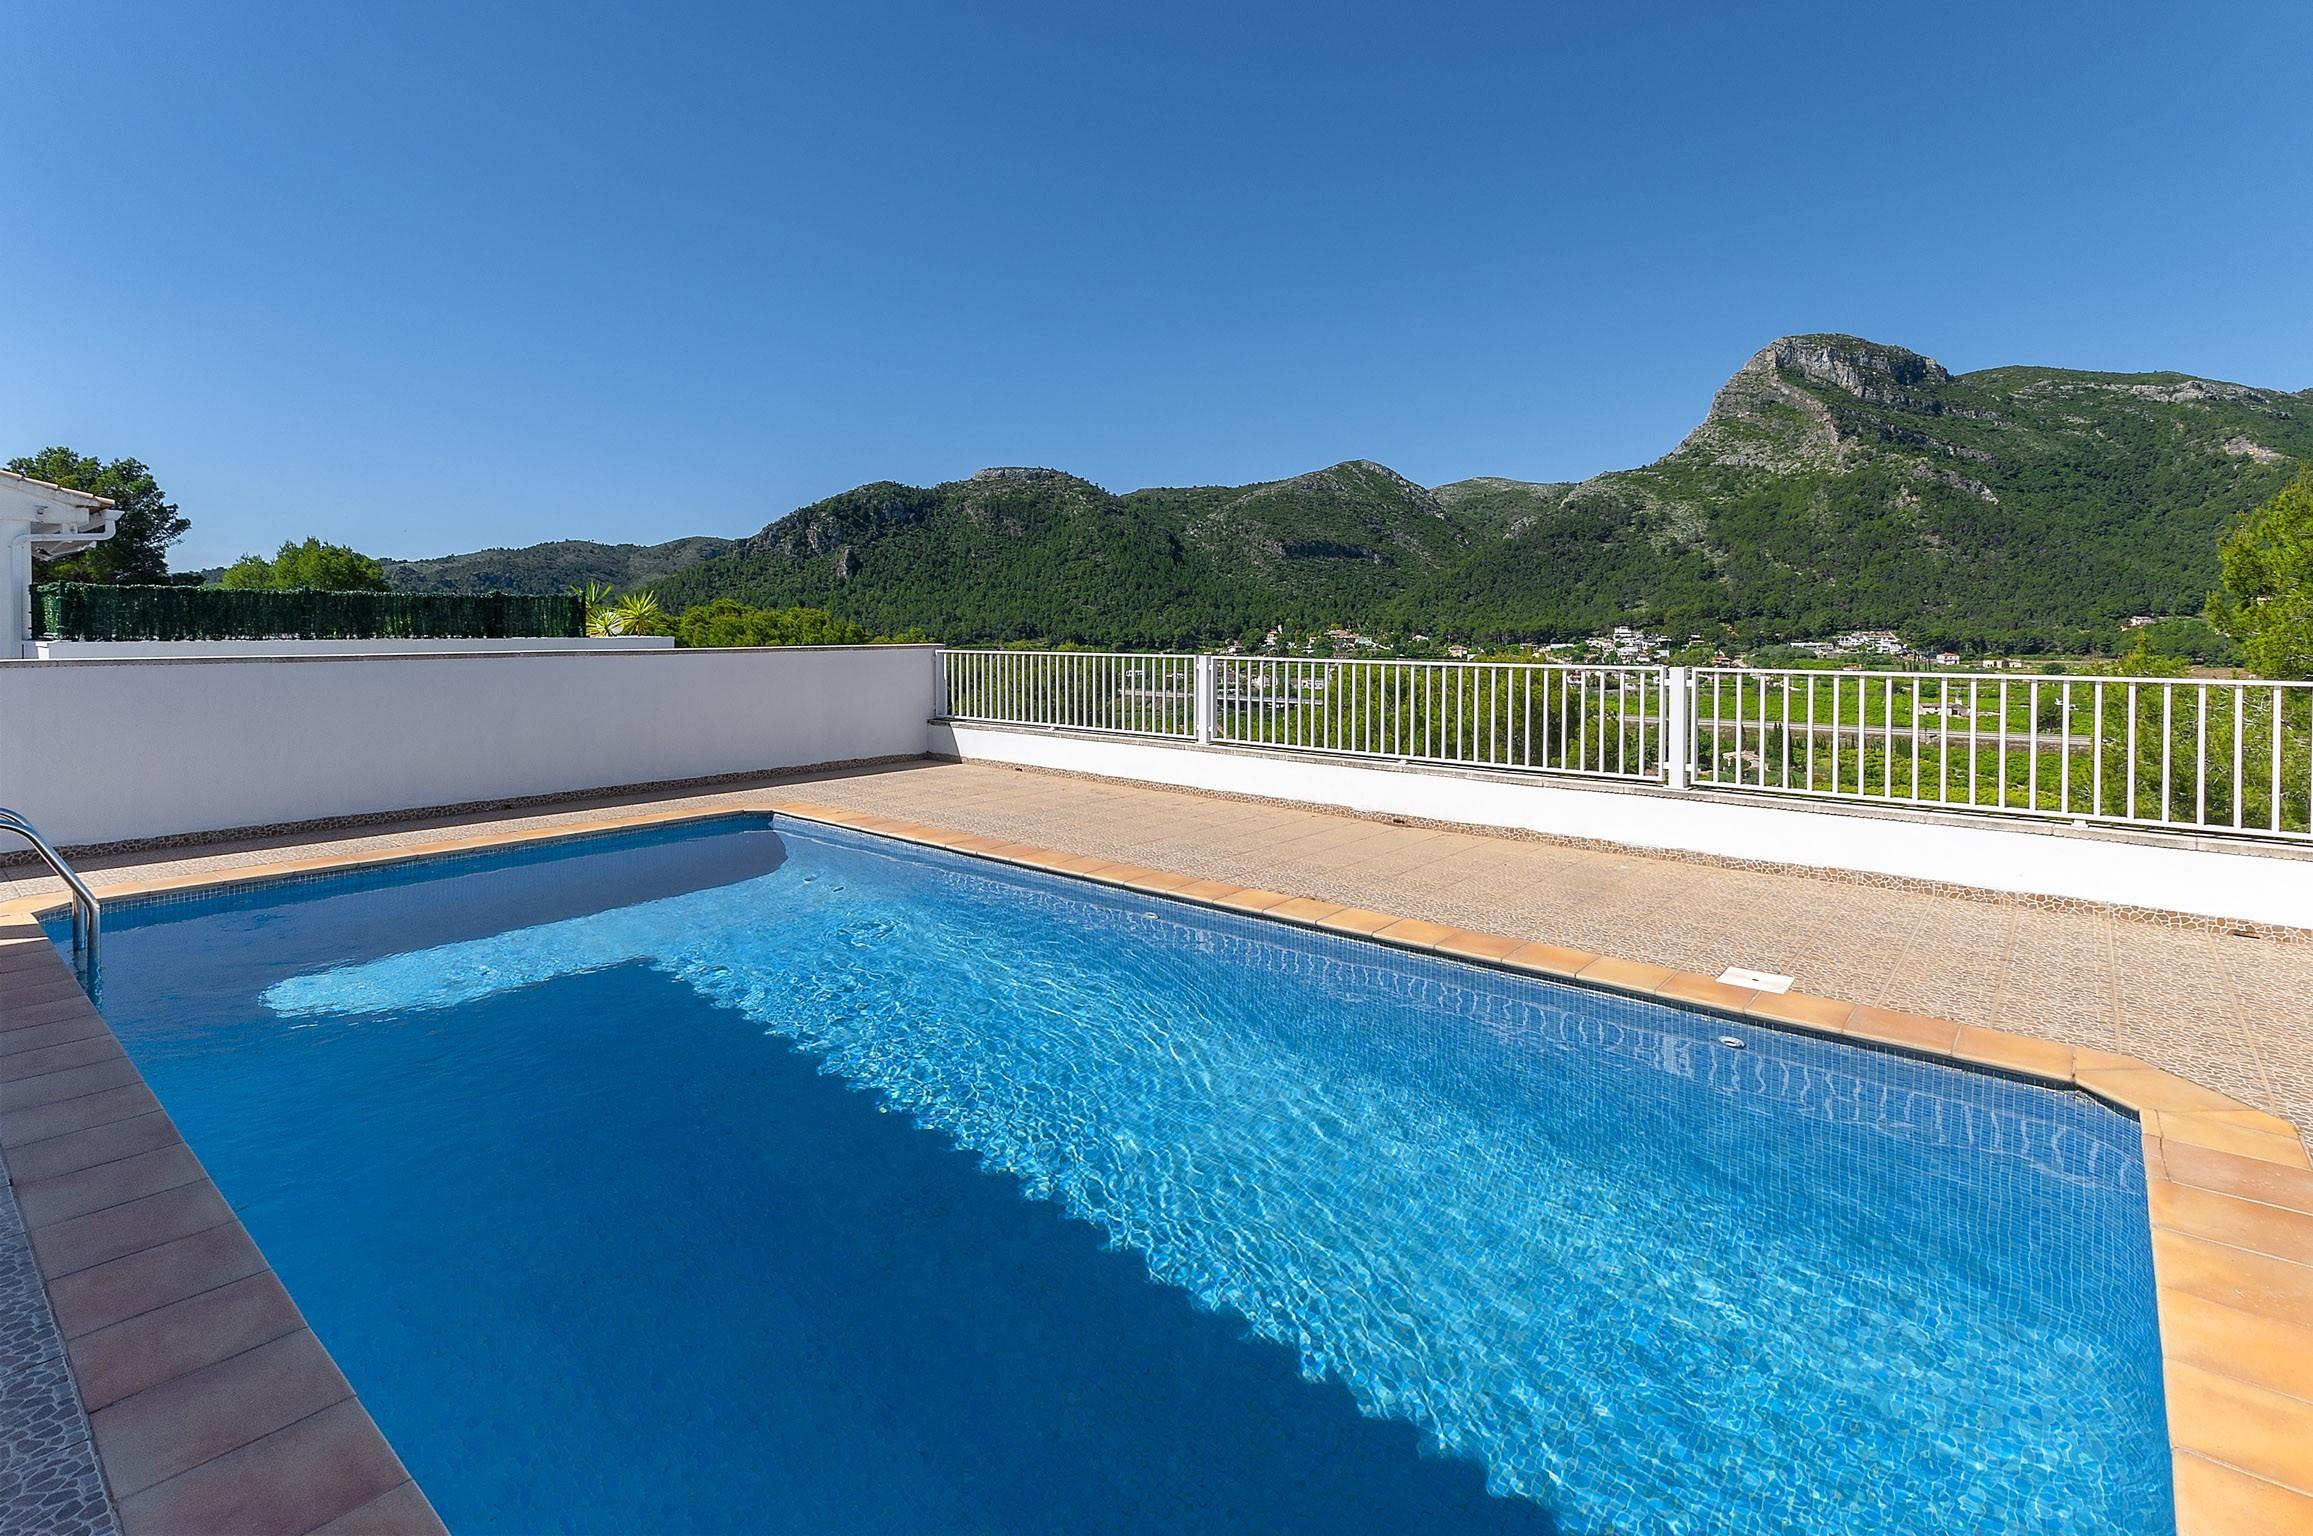 Property Image 1 - TOMILLO - Villa with private pool in URB. Santa Marta, Gandia.